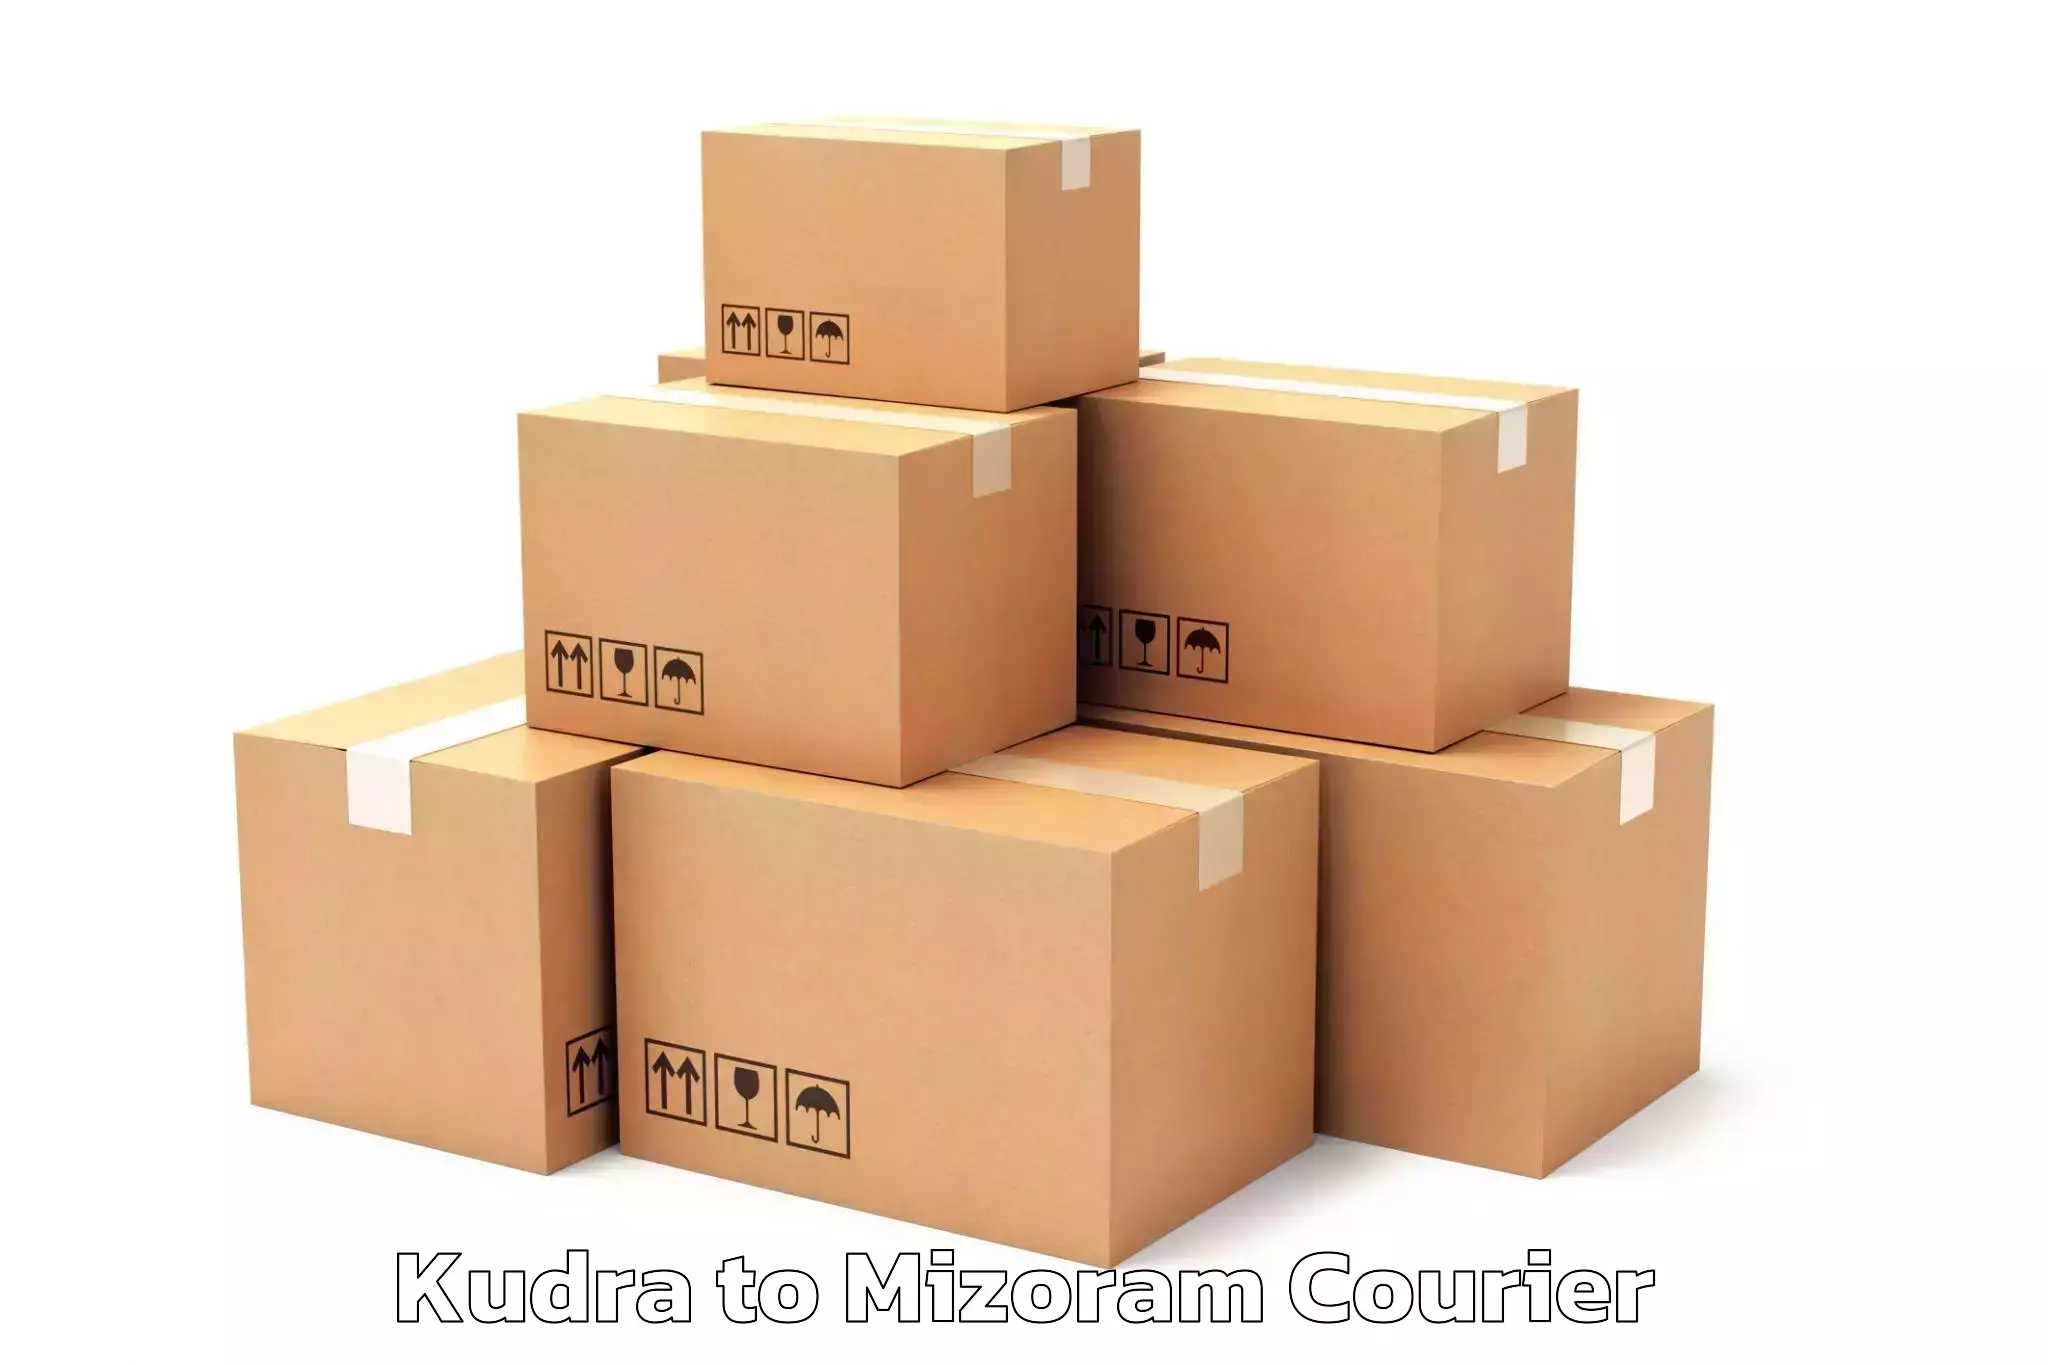 Moving and storage services Kudra to Mizoram